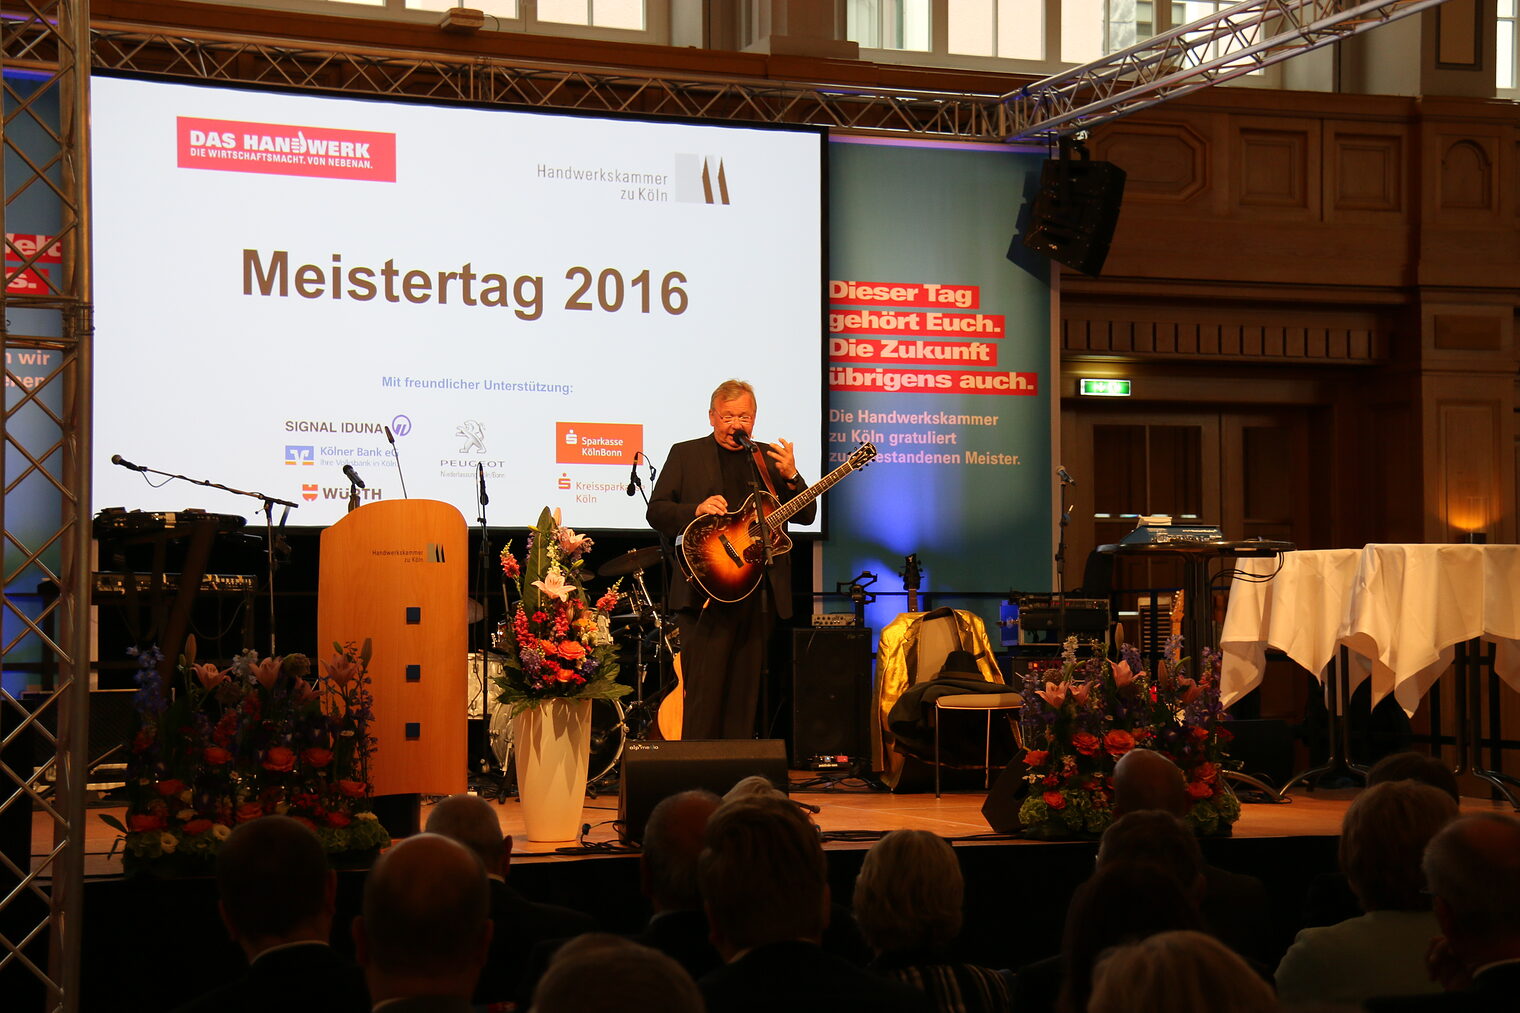 Meistertag 2016 26